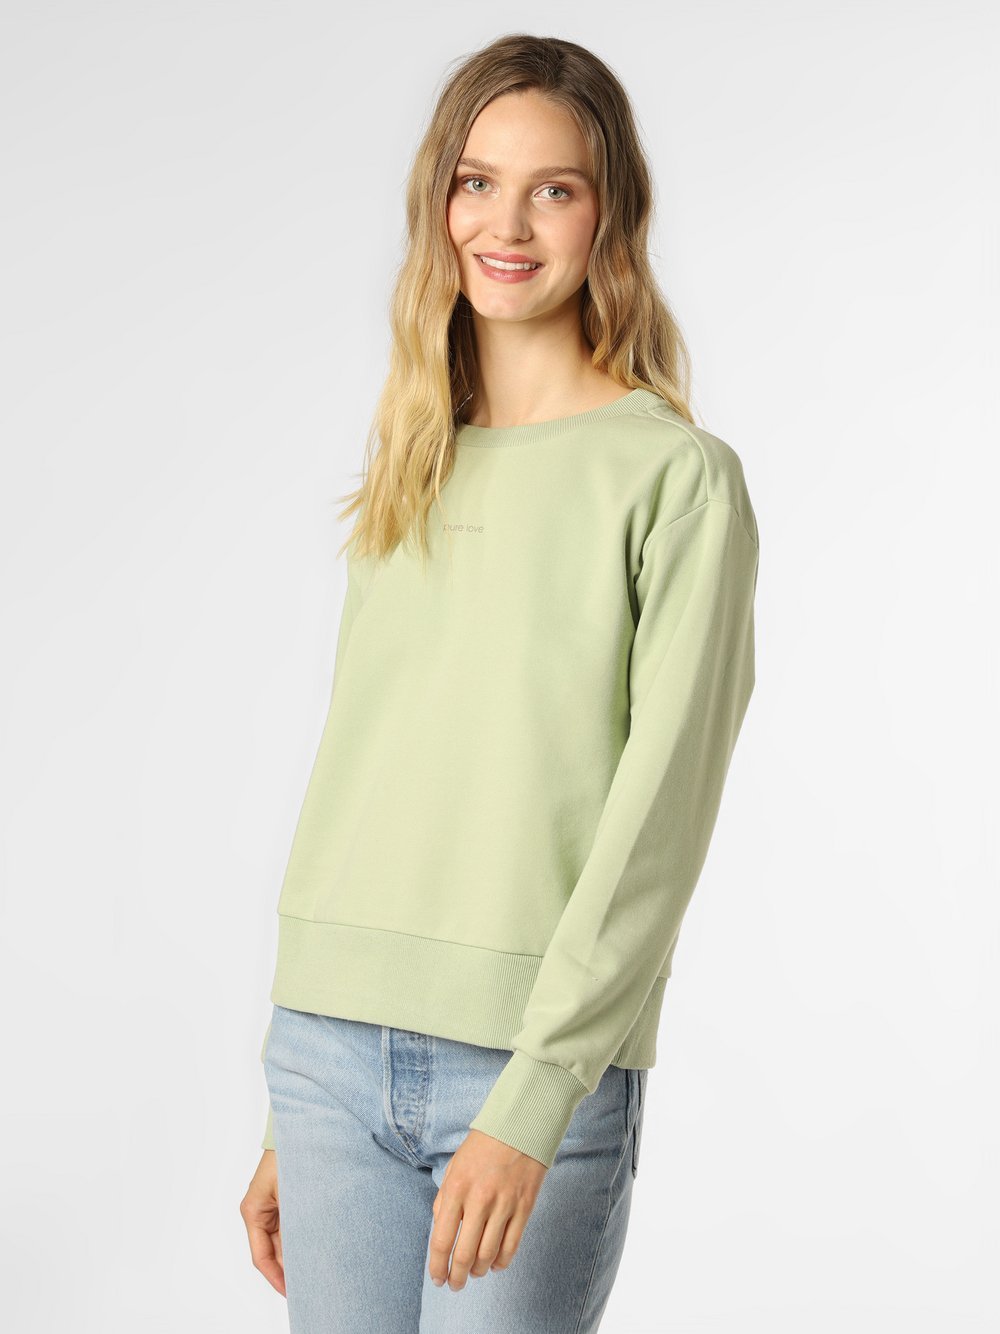 IPURI - Damska bluza nierozpinana, zielony